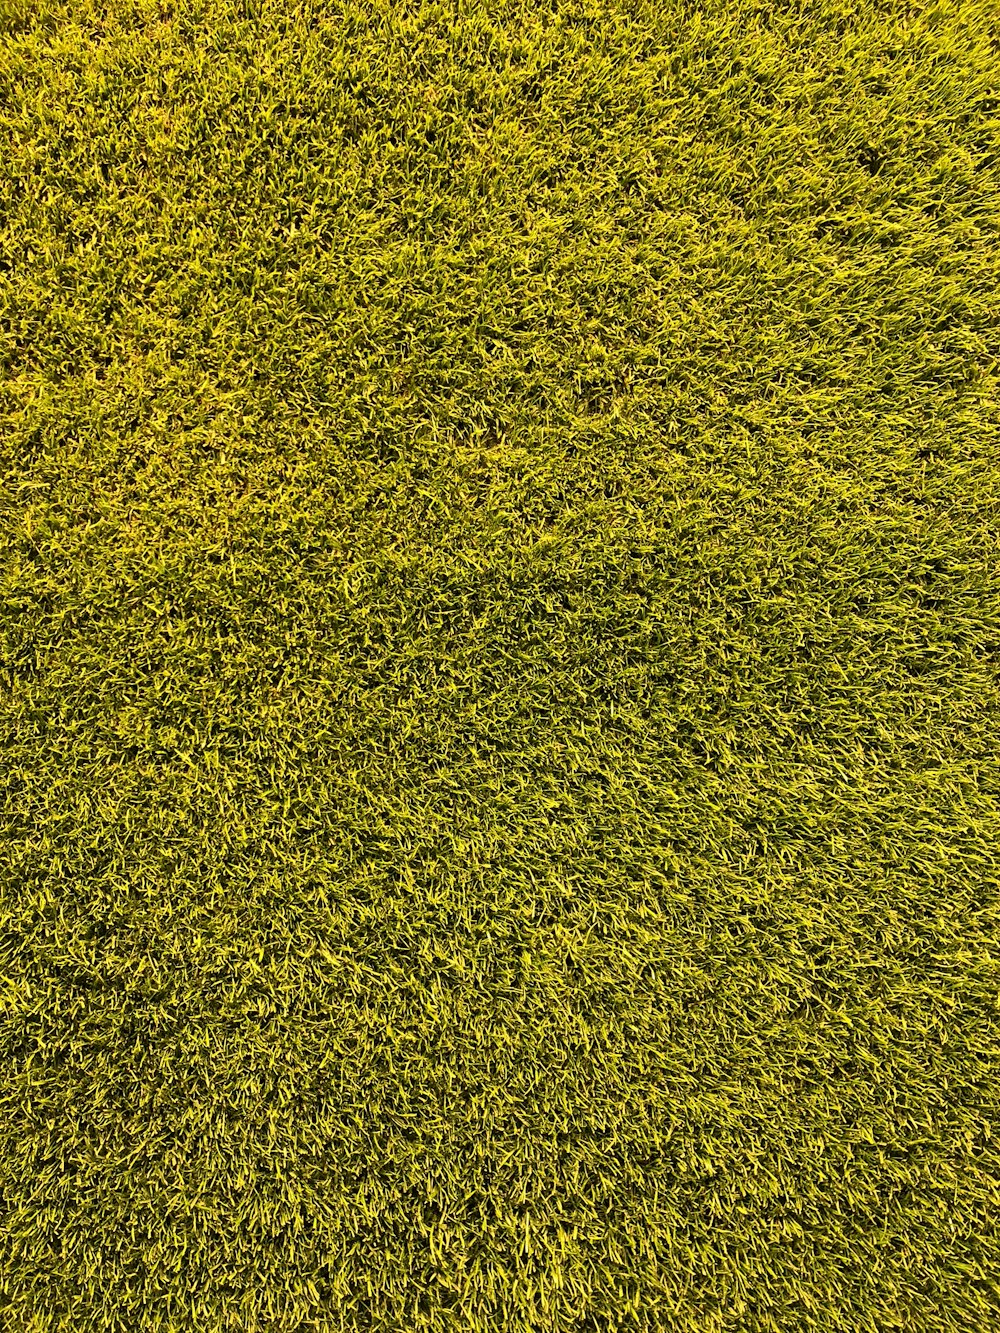 Eine Nahaufnahme eines grünen Grasfeldes